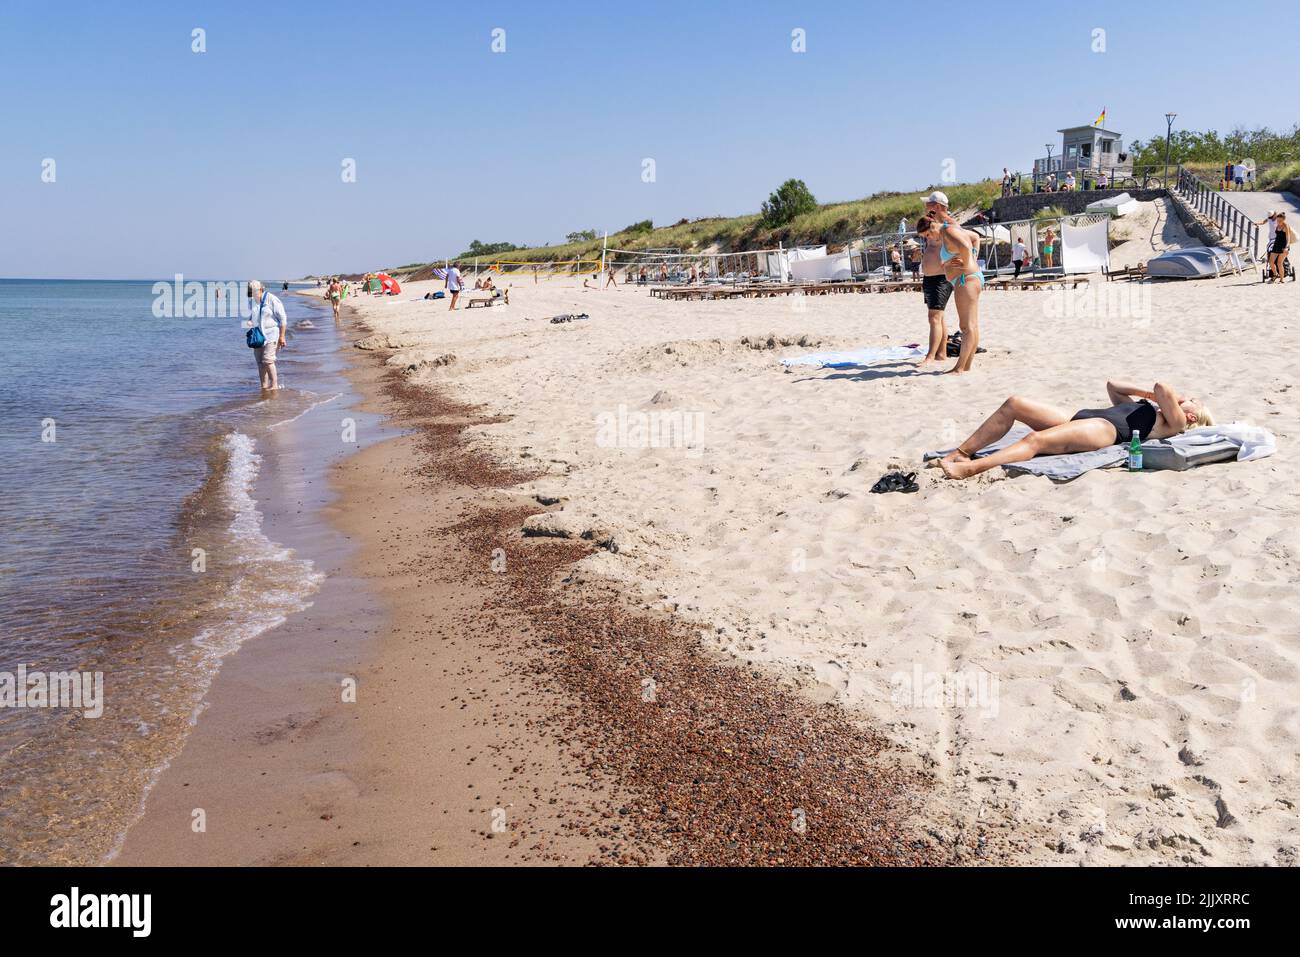 La spiaggia della Lituania; la gente gode la spiaggia sabbiosa in estate sulla costa del Mar Baltico sulla spina di Curonian, Lituania, Europa Foto Stock